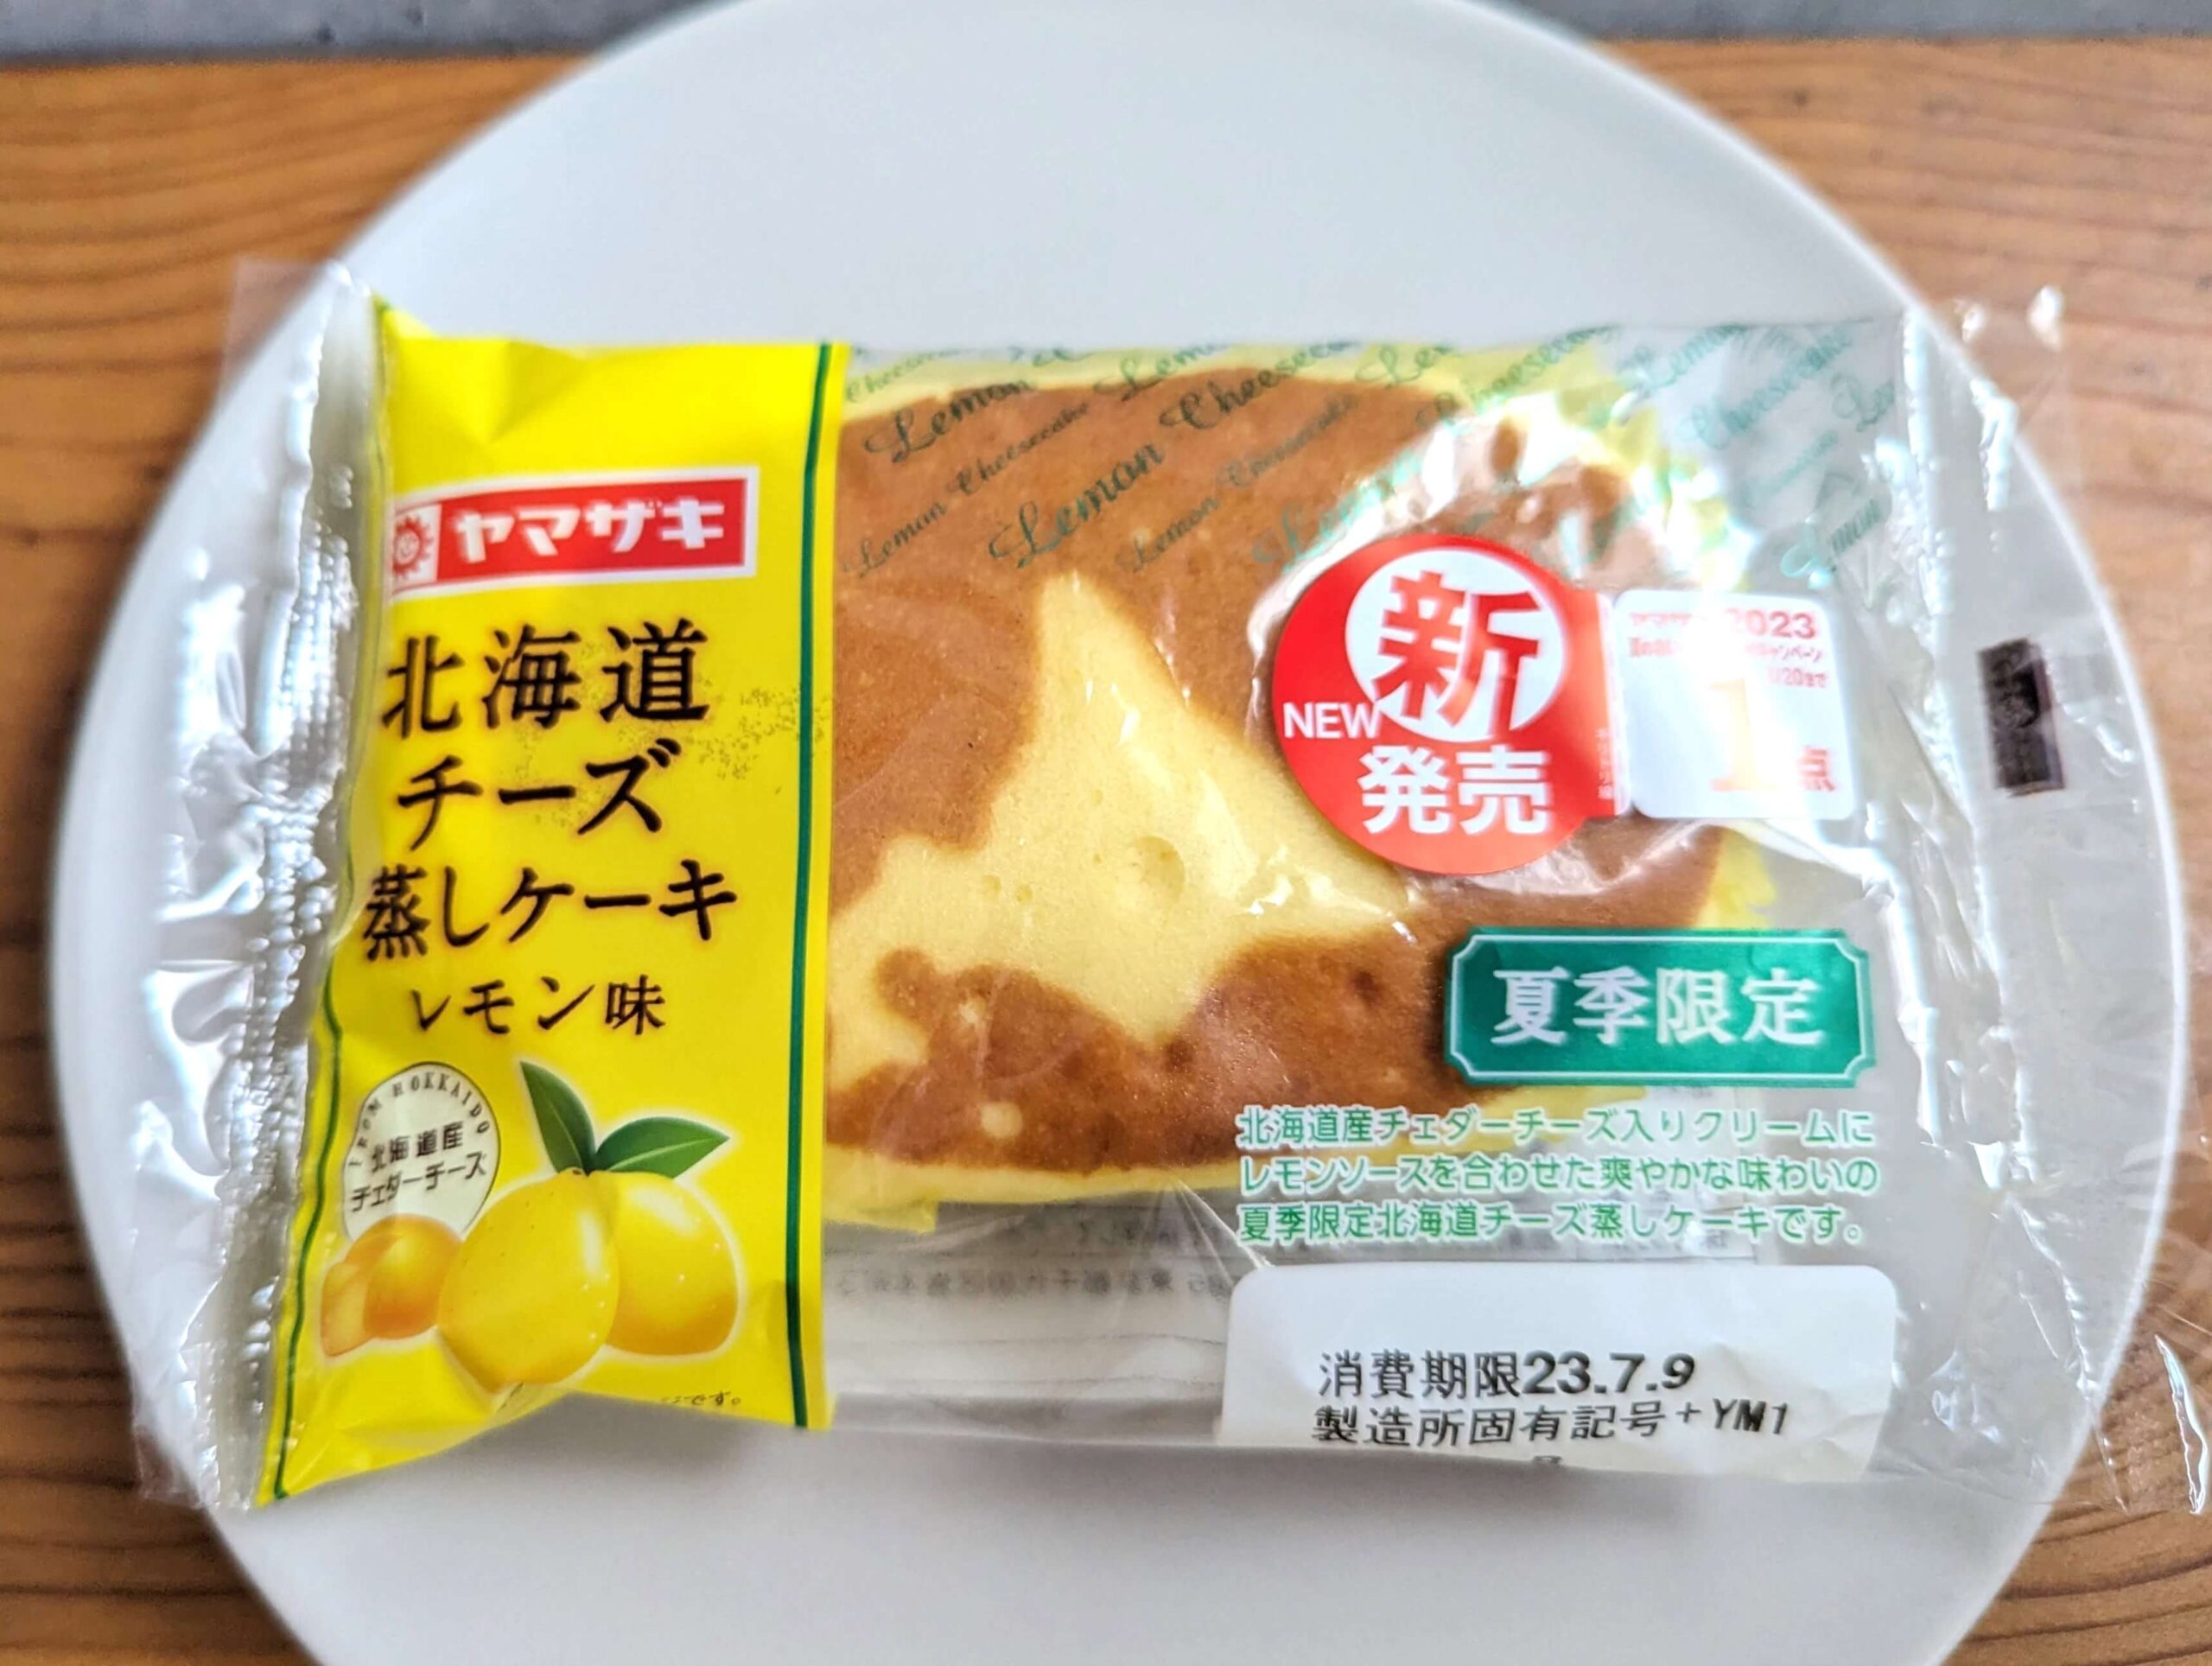 山崎製パン・北海道チーズ蒸しケーキ レモン味 (2)